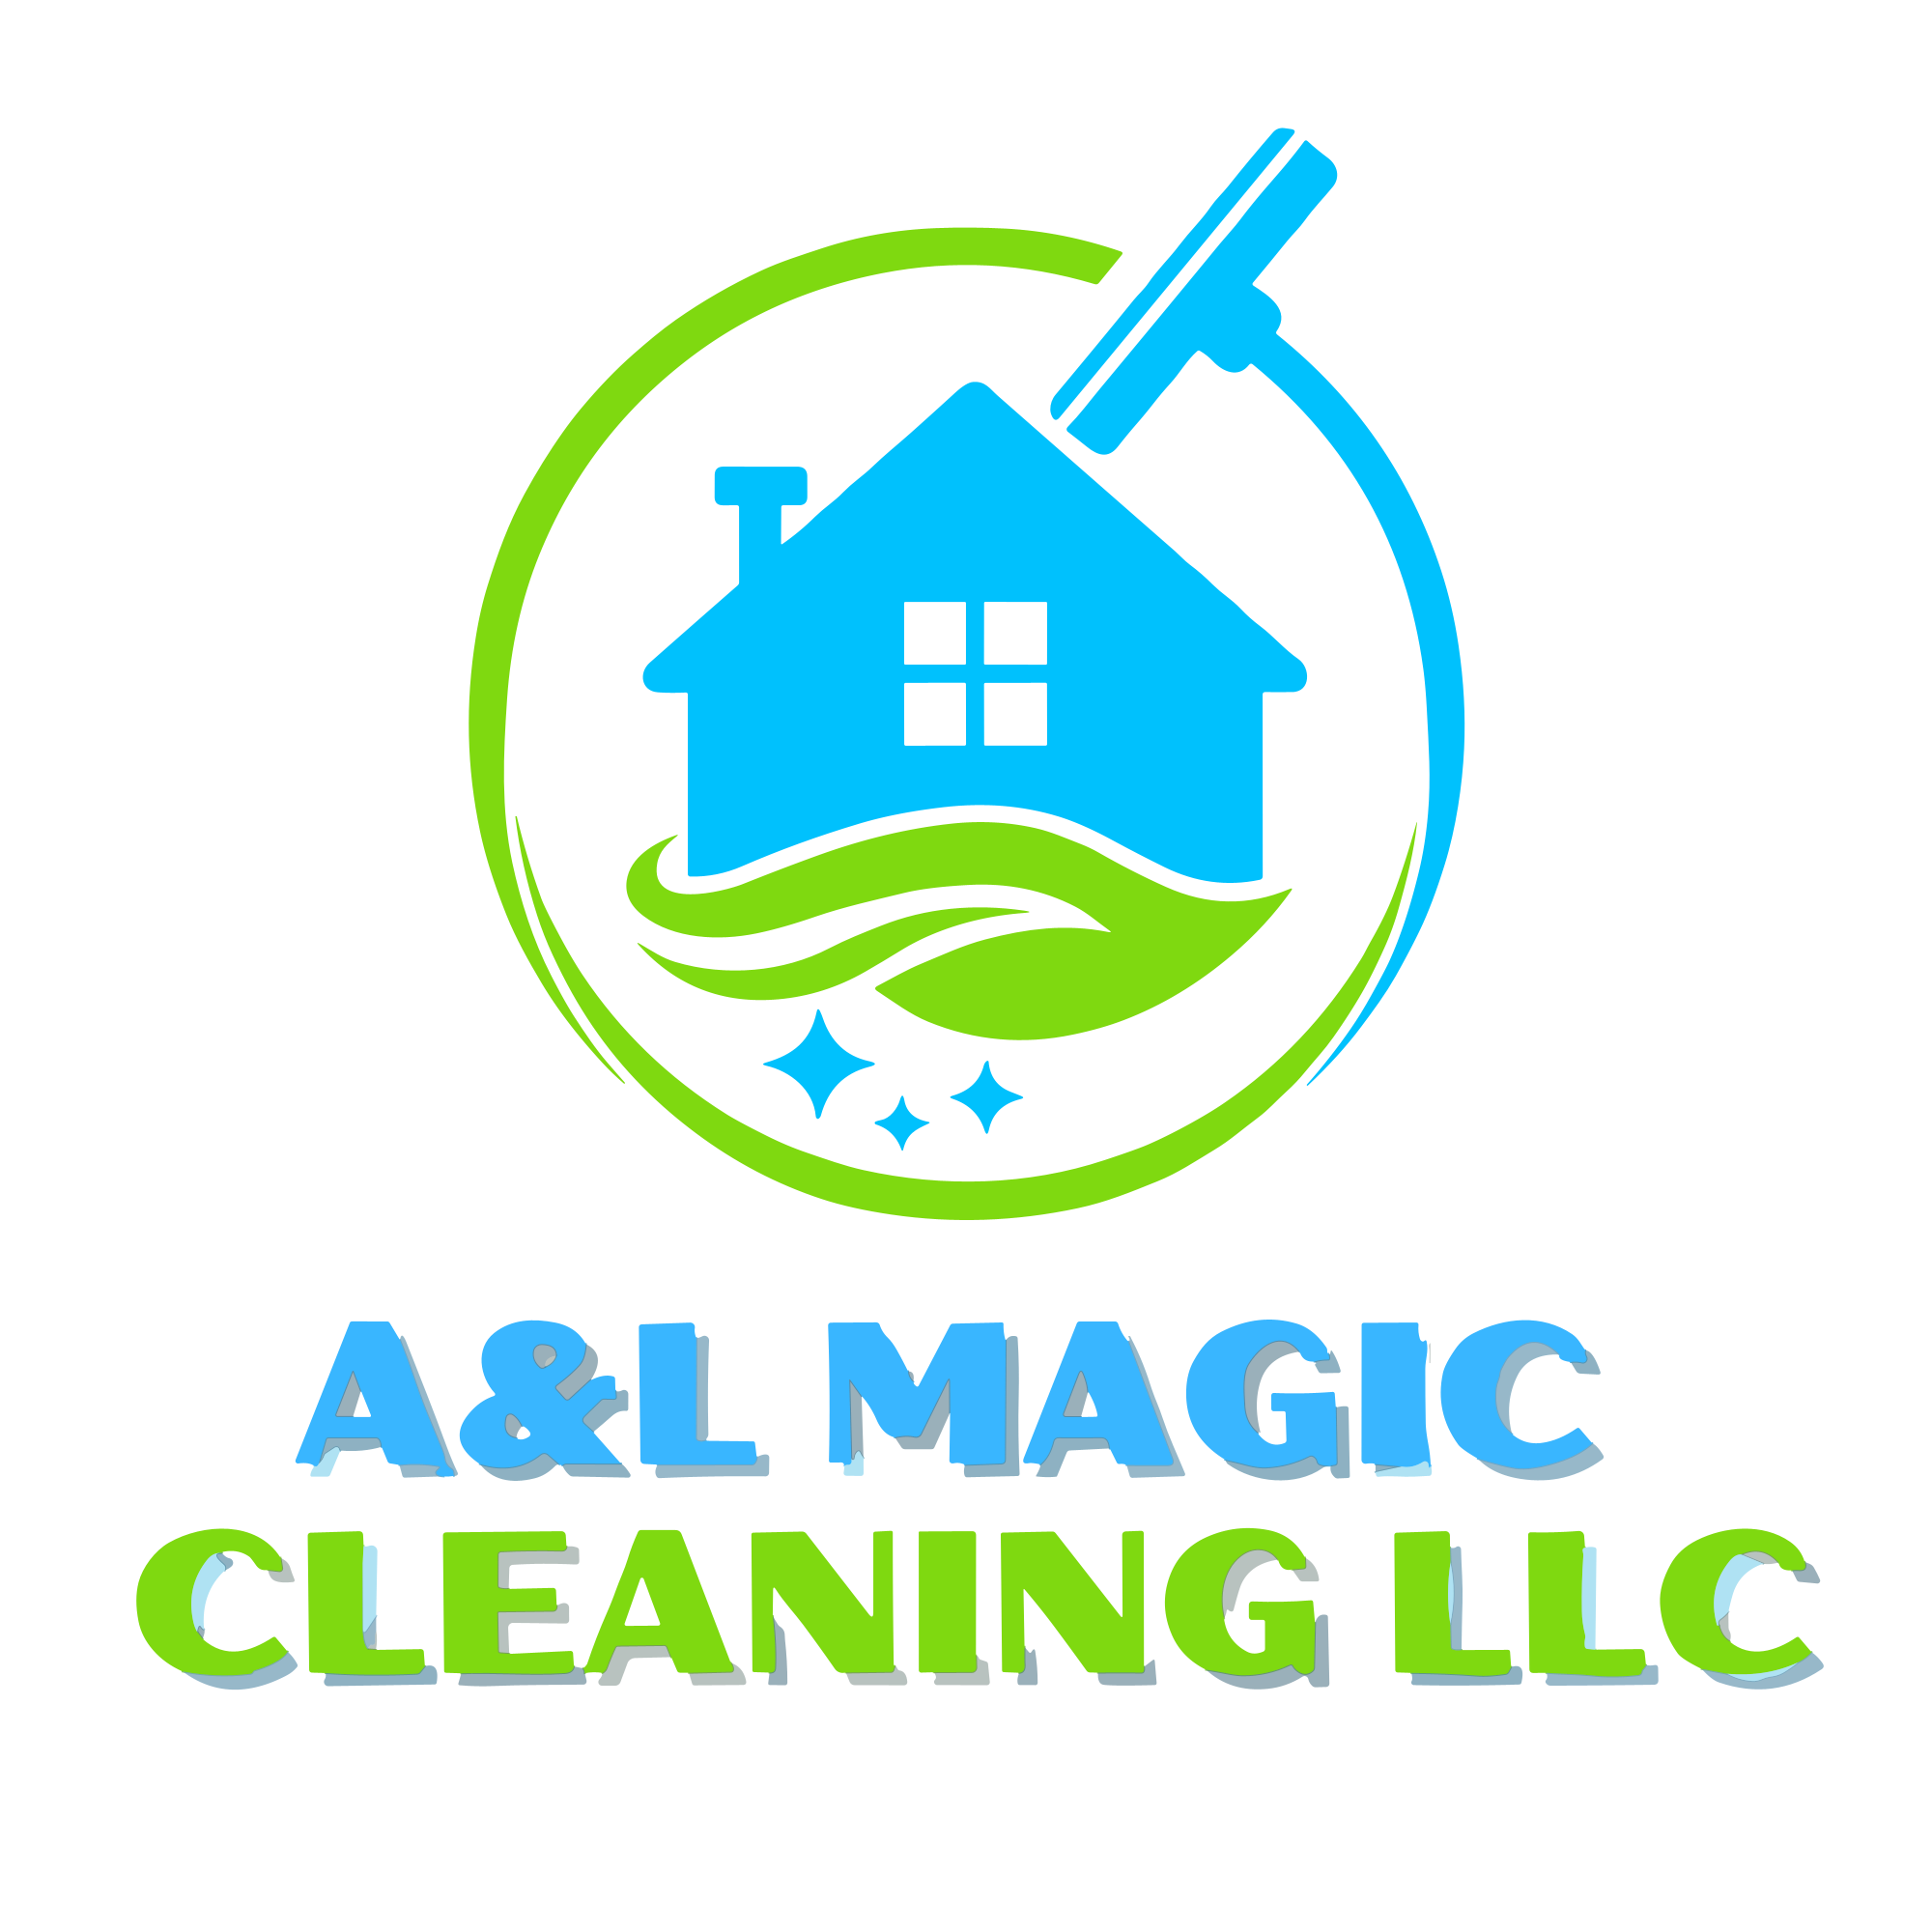 A&L Magic cleaning LLC